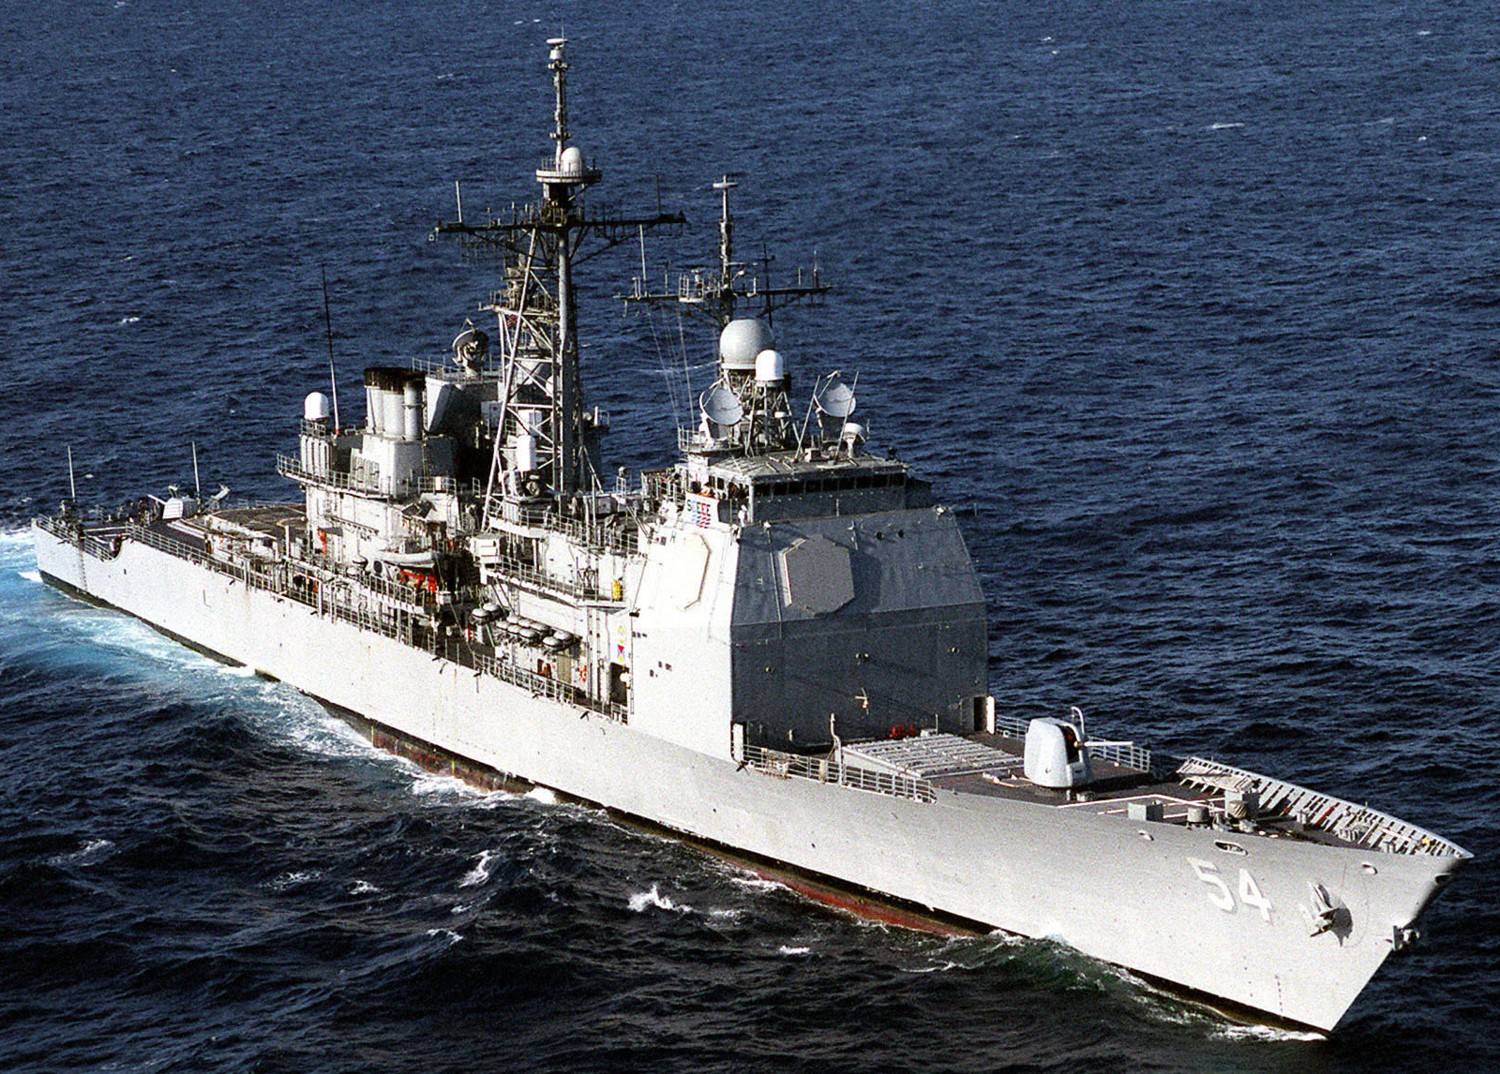 cg-54 uss antietam ticonderoga class guided missile cruiser aegis us navy rimpac 1998